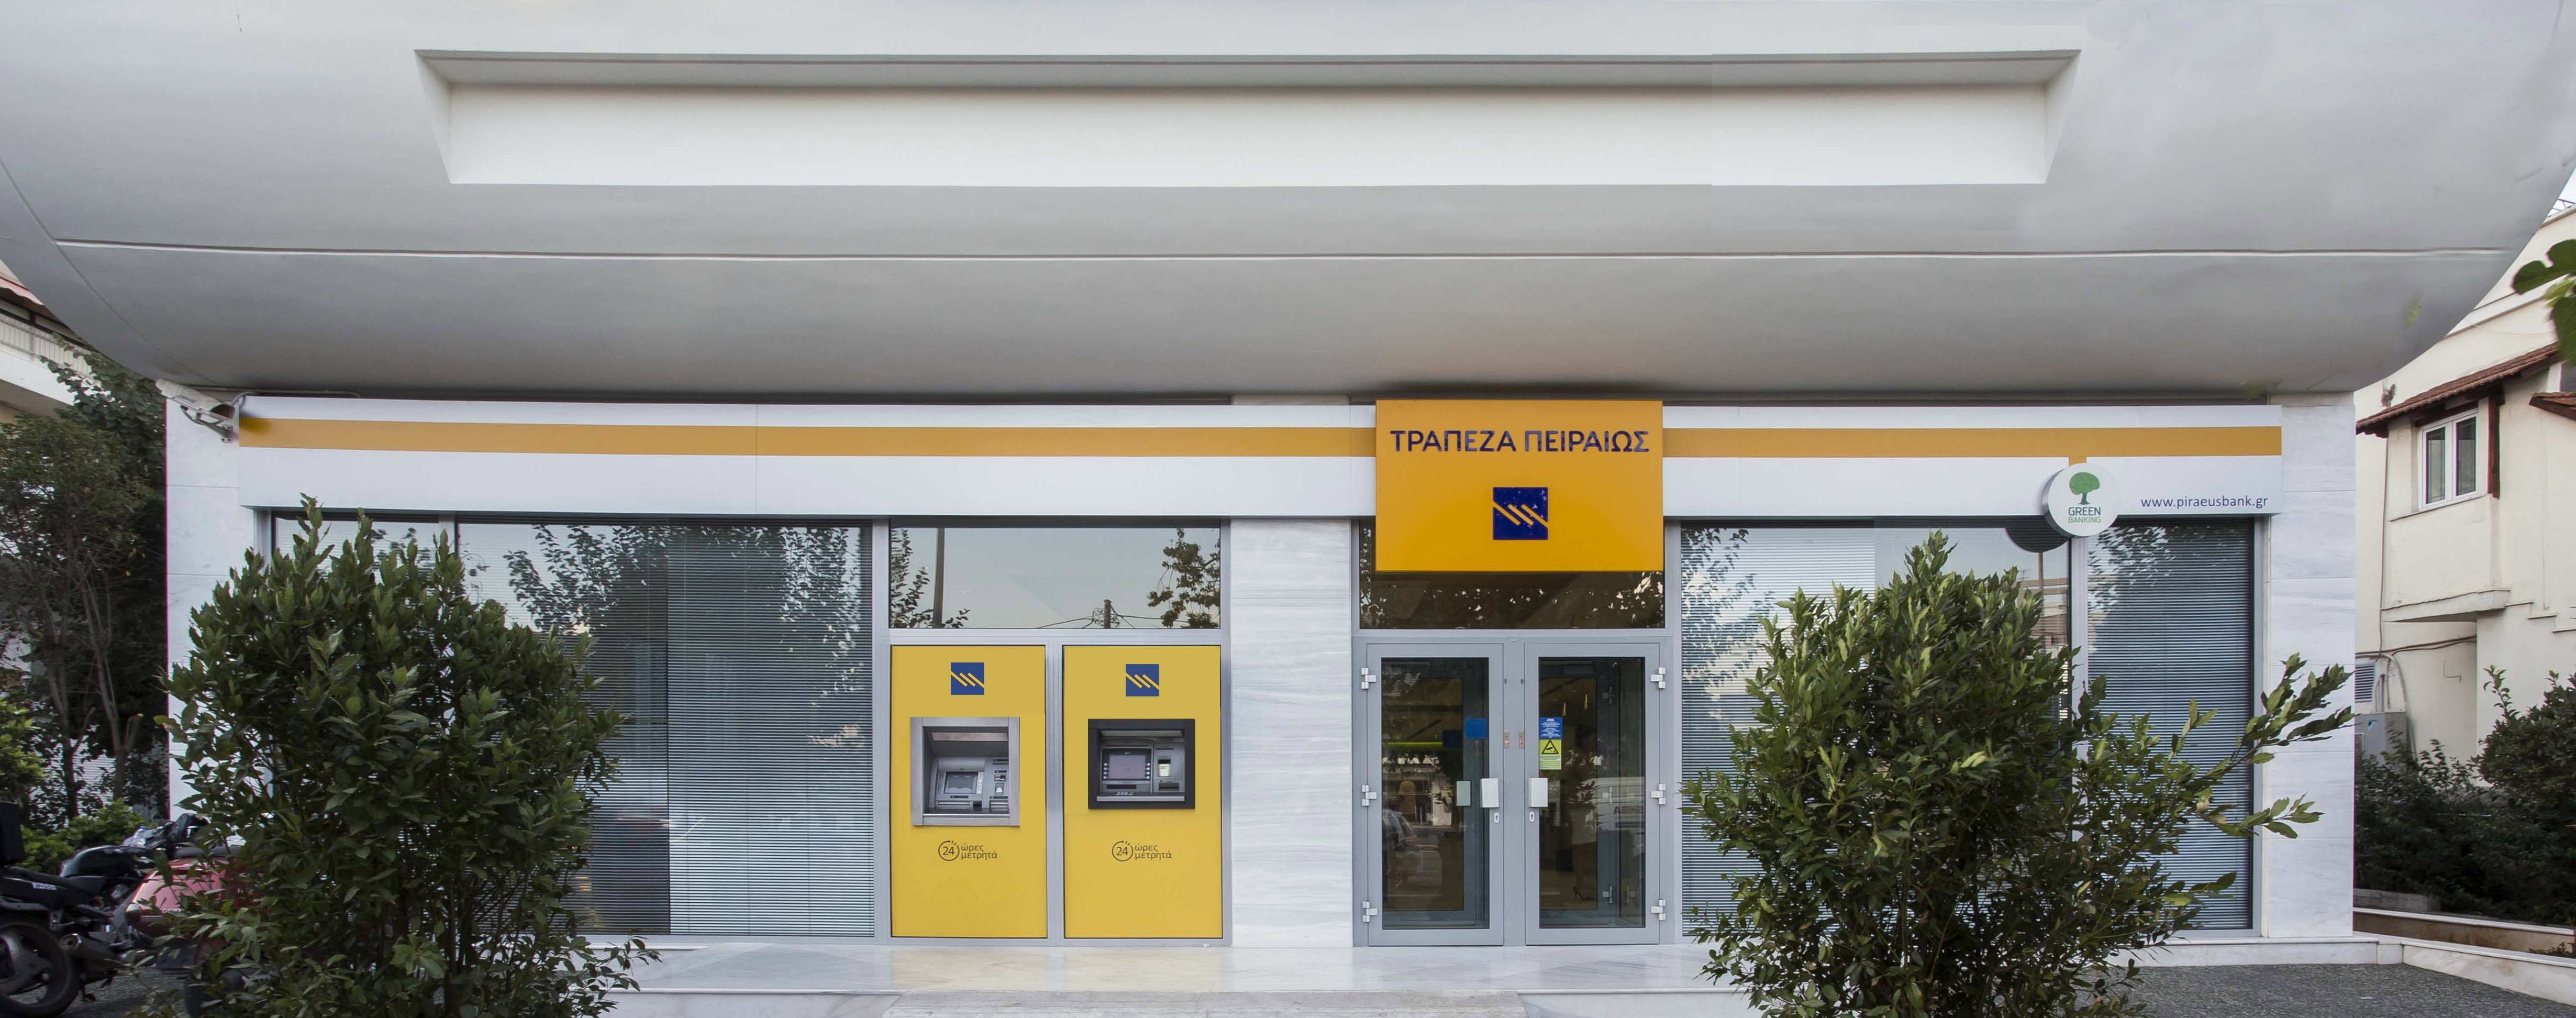 Τράπεζα Πειραιώς: 112 Κέντρα Ειδικών Συναλλαγών σε όλη την Ελλάδα